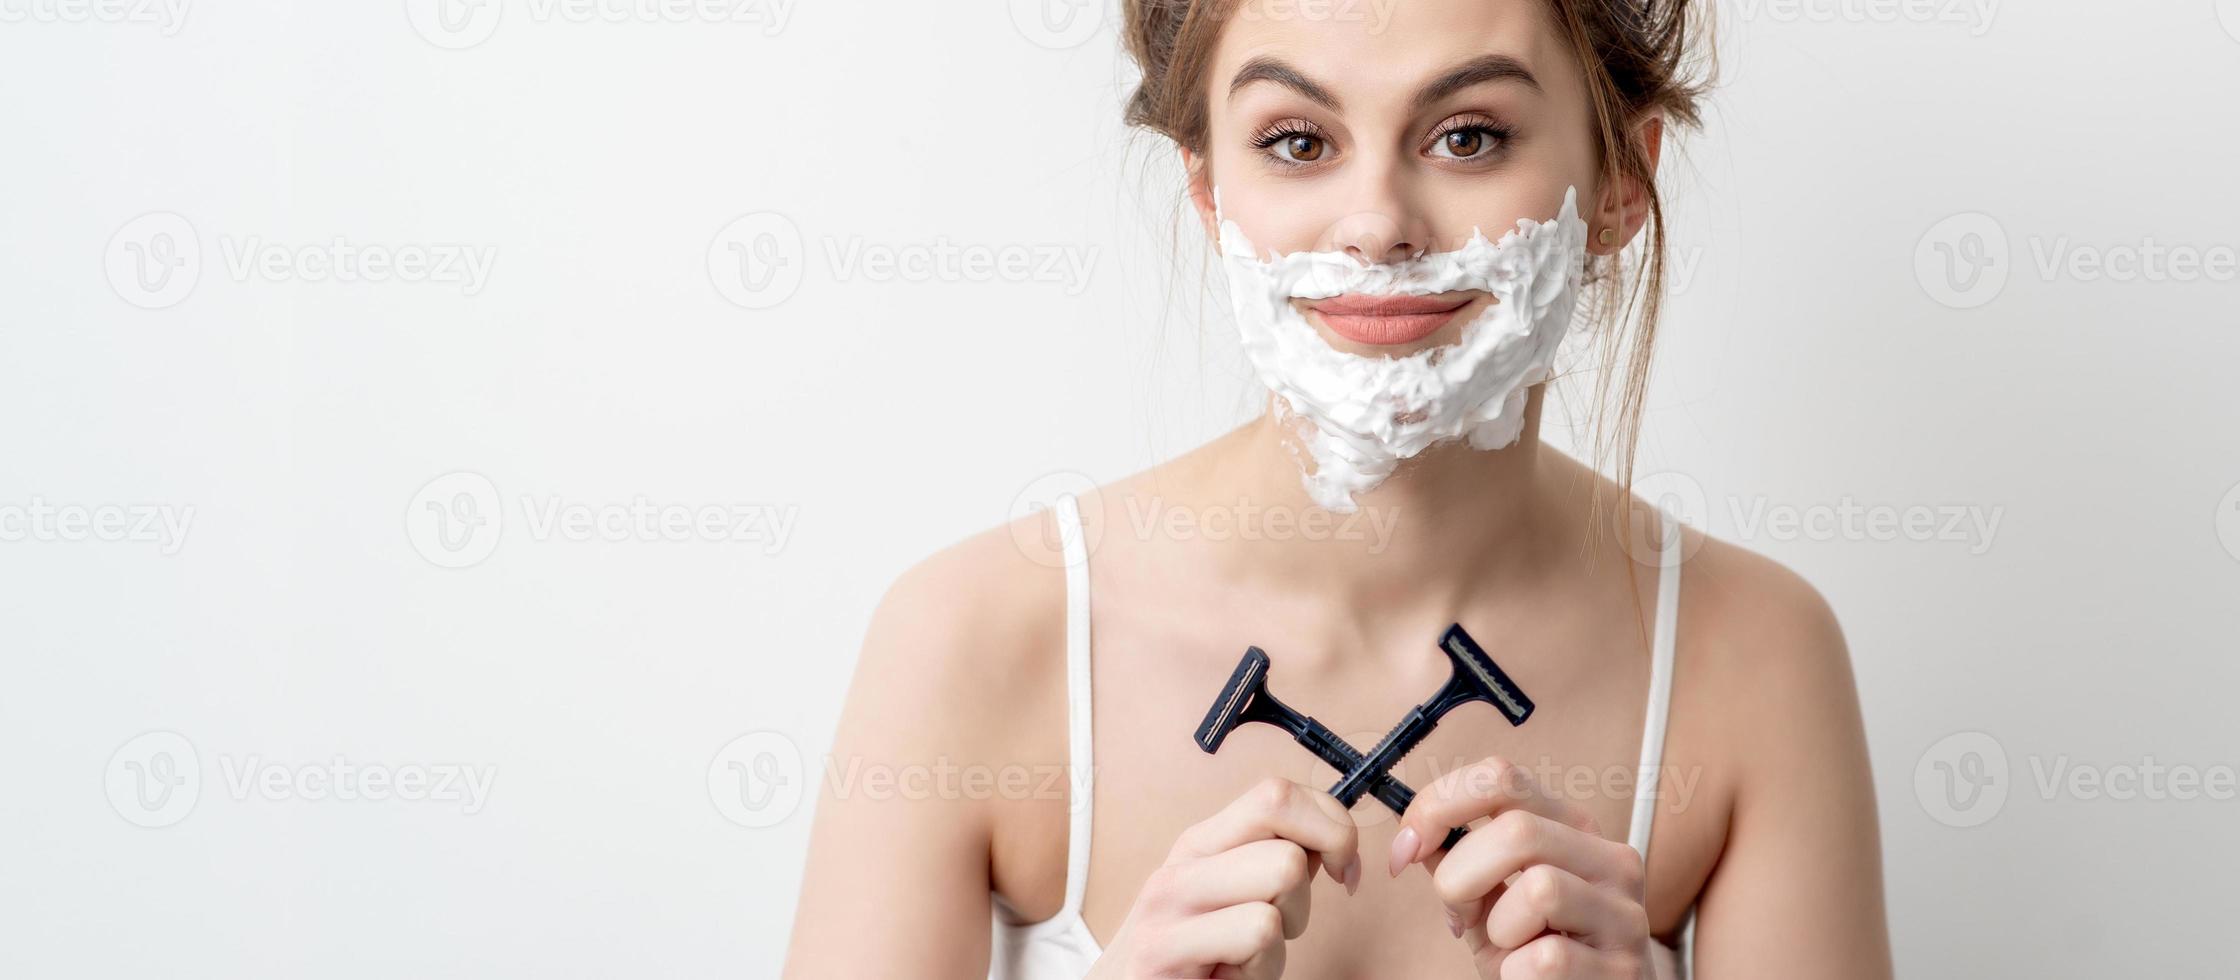 femme avec de la mousse à raser sur le visage photo